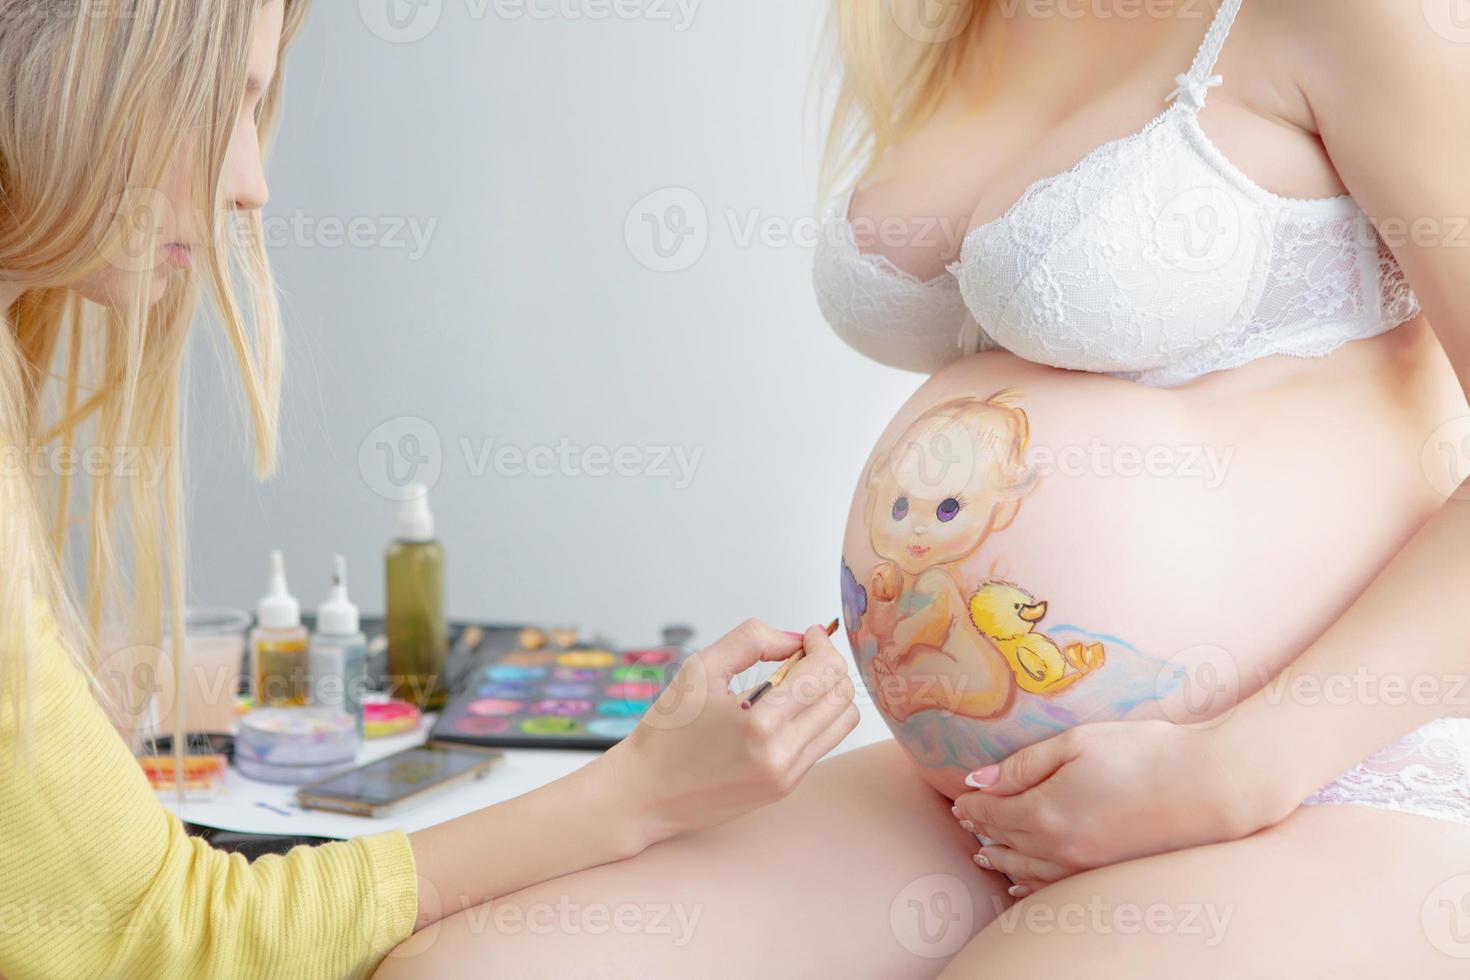 maquillaje artista sorteos un linda bebé en el barriga de un embarazada joven mujer foto